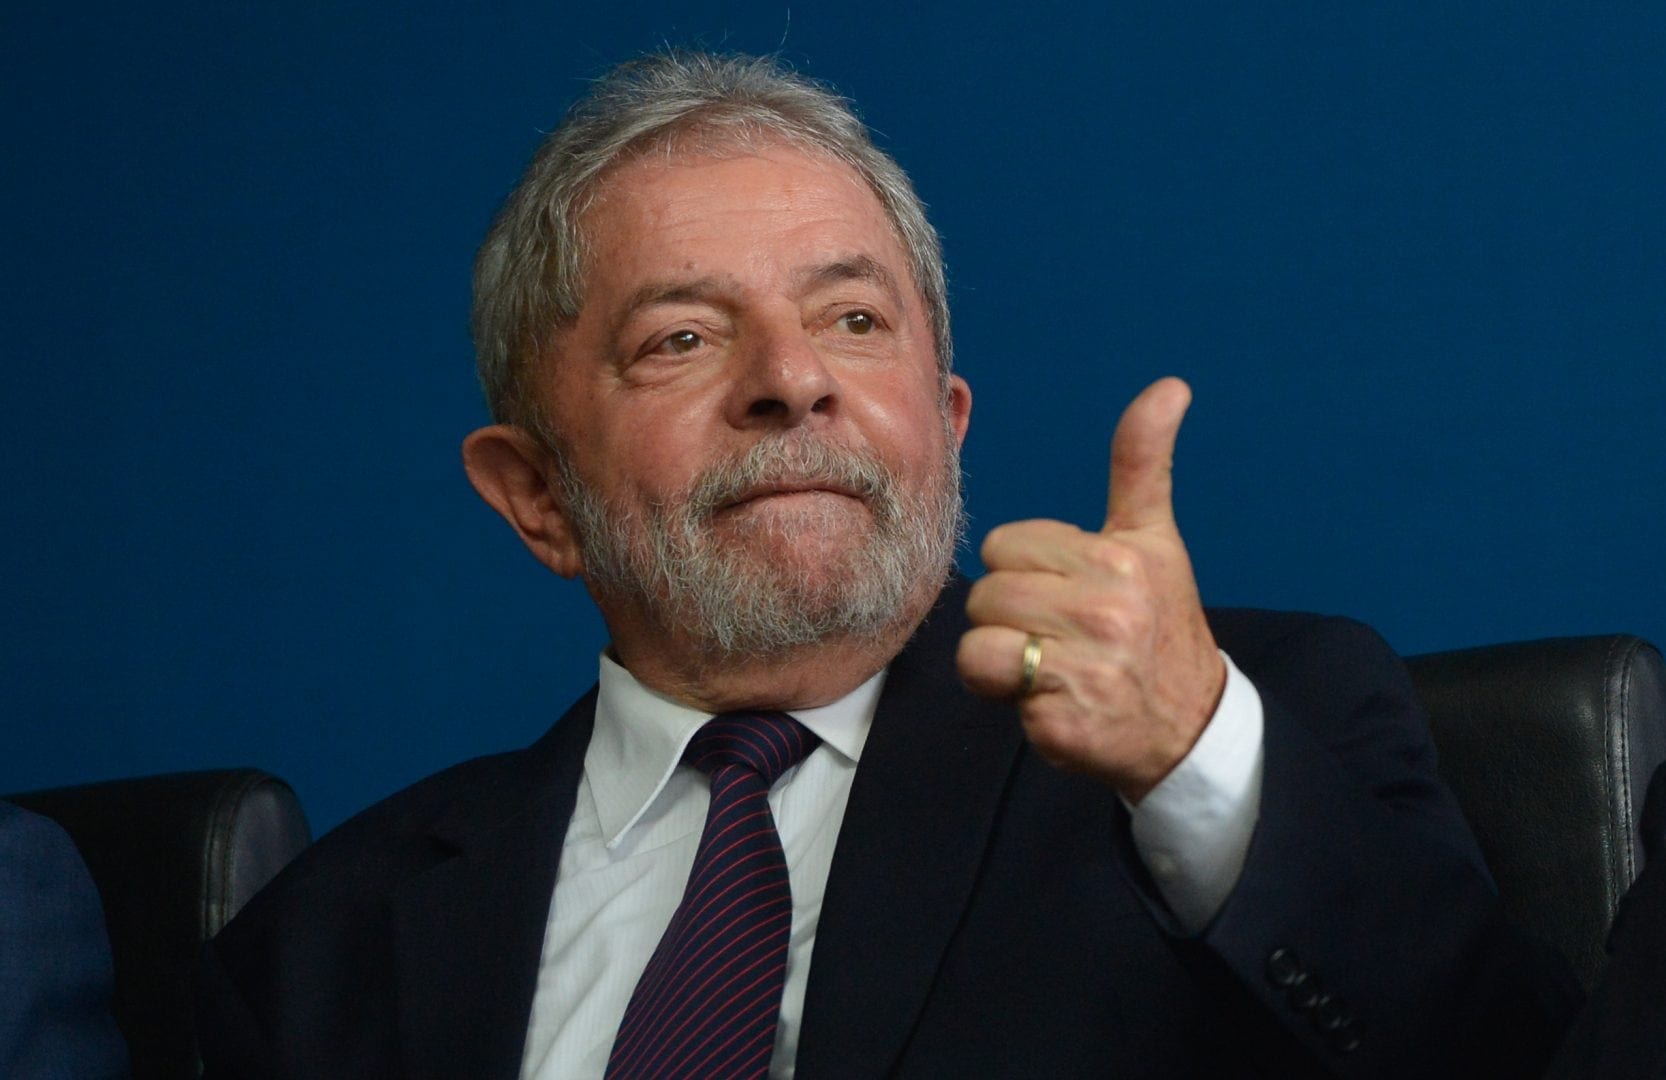 Eleições 2018: Pesquisa Datafolha aponta Lula com 39% das intenções de voto